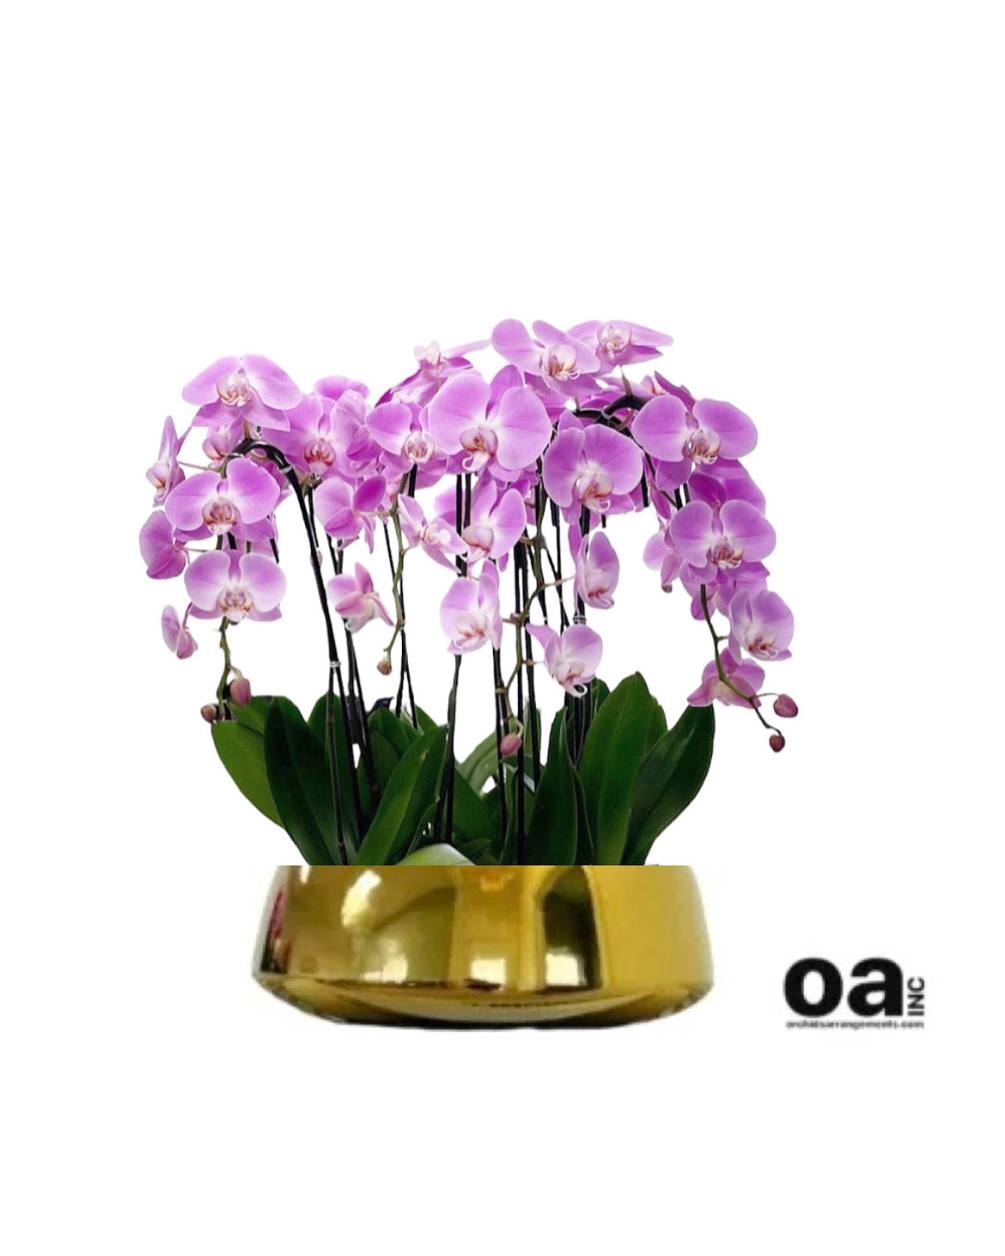 Floral Orchids Miami
10 pink orchids flowers 14&quot; D x 5&quot; T Bouquet
Delivery